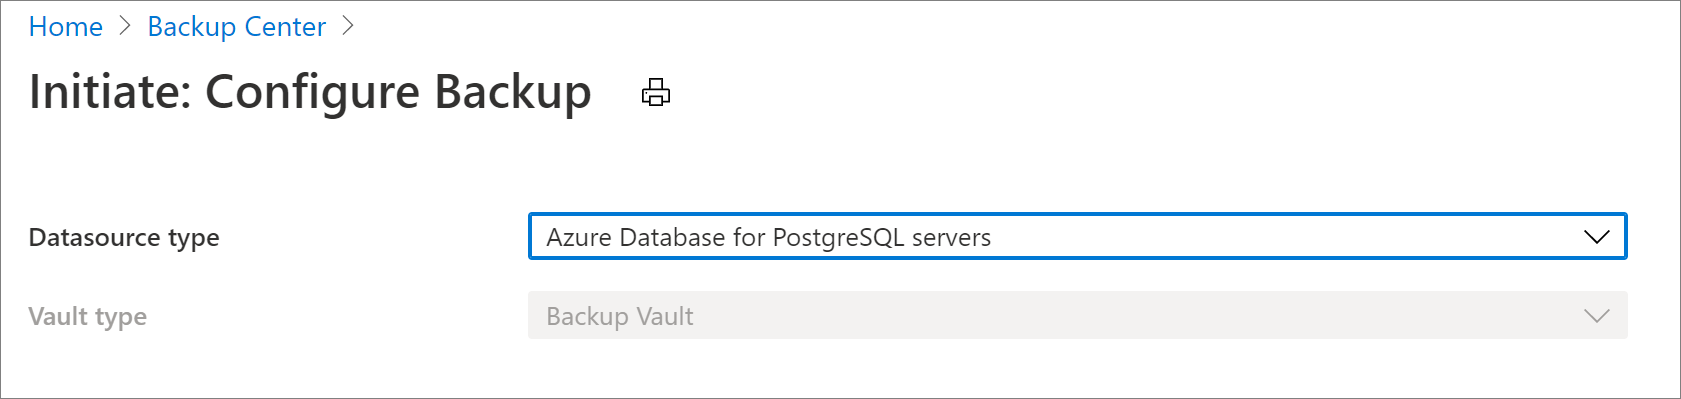 Sélectionner une source de données pour configurer la sauvegarde du serveur Azure Database pour PostgreSQL